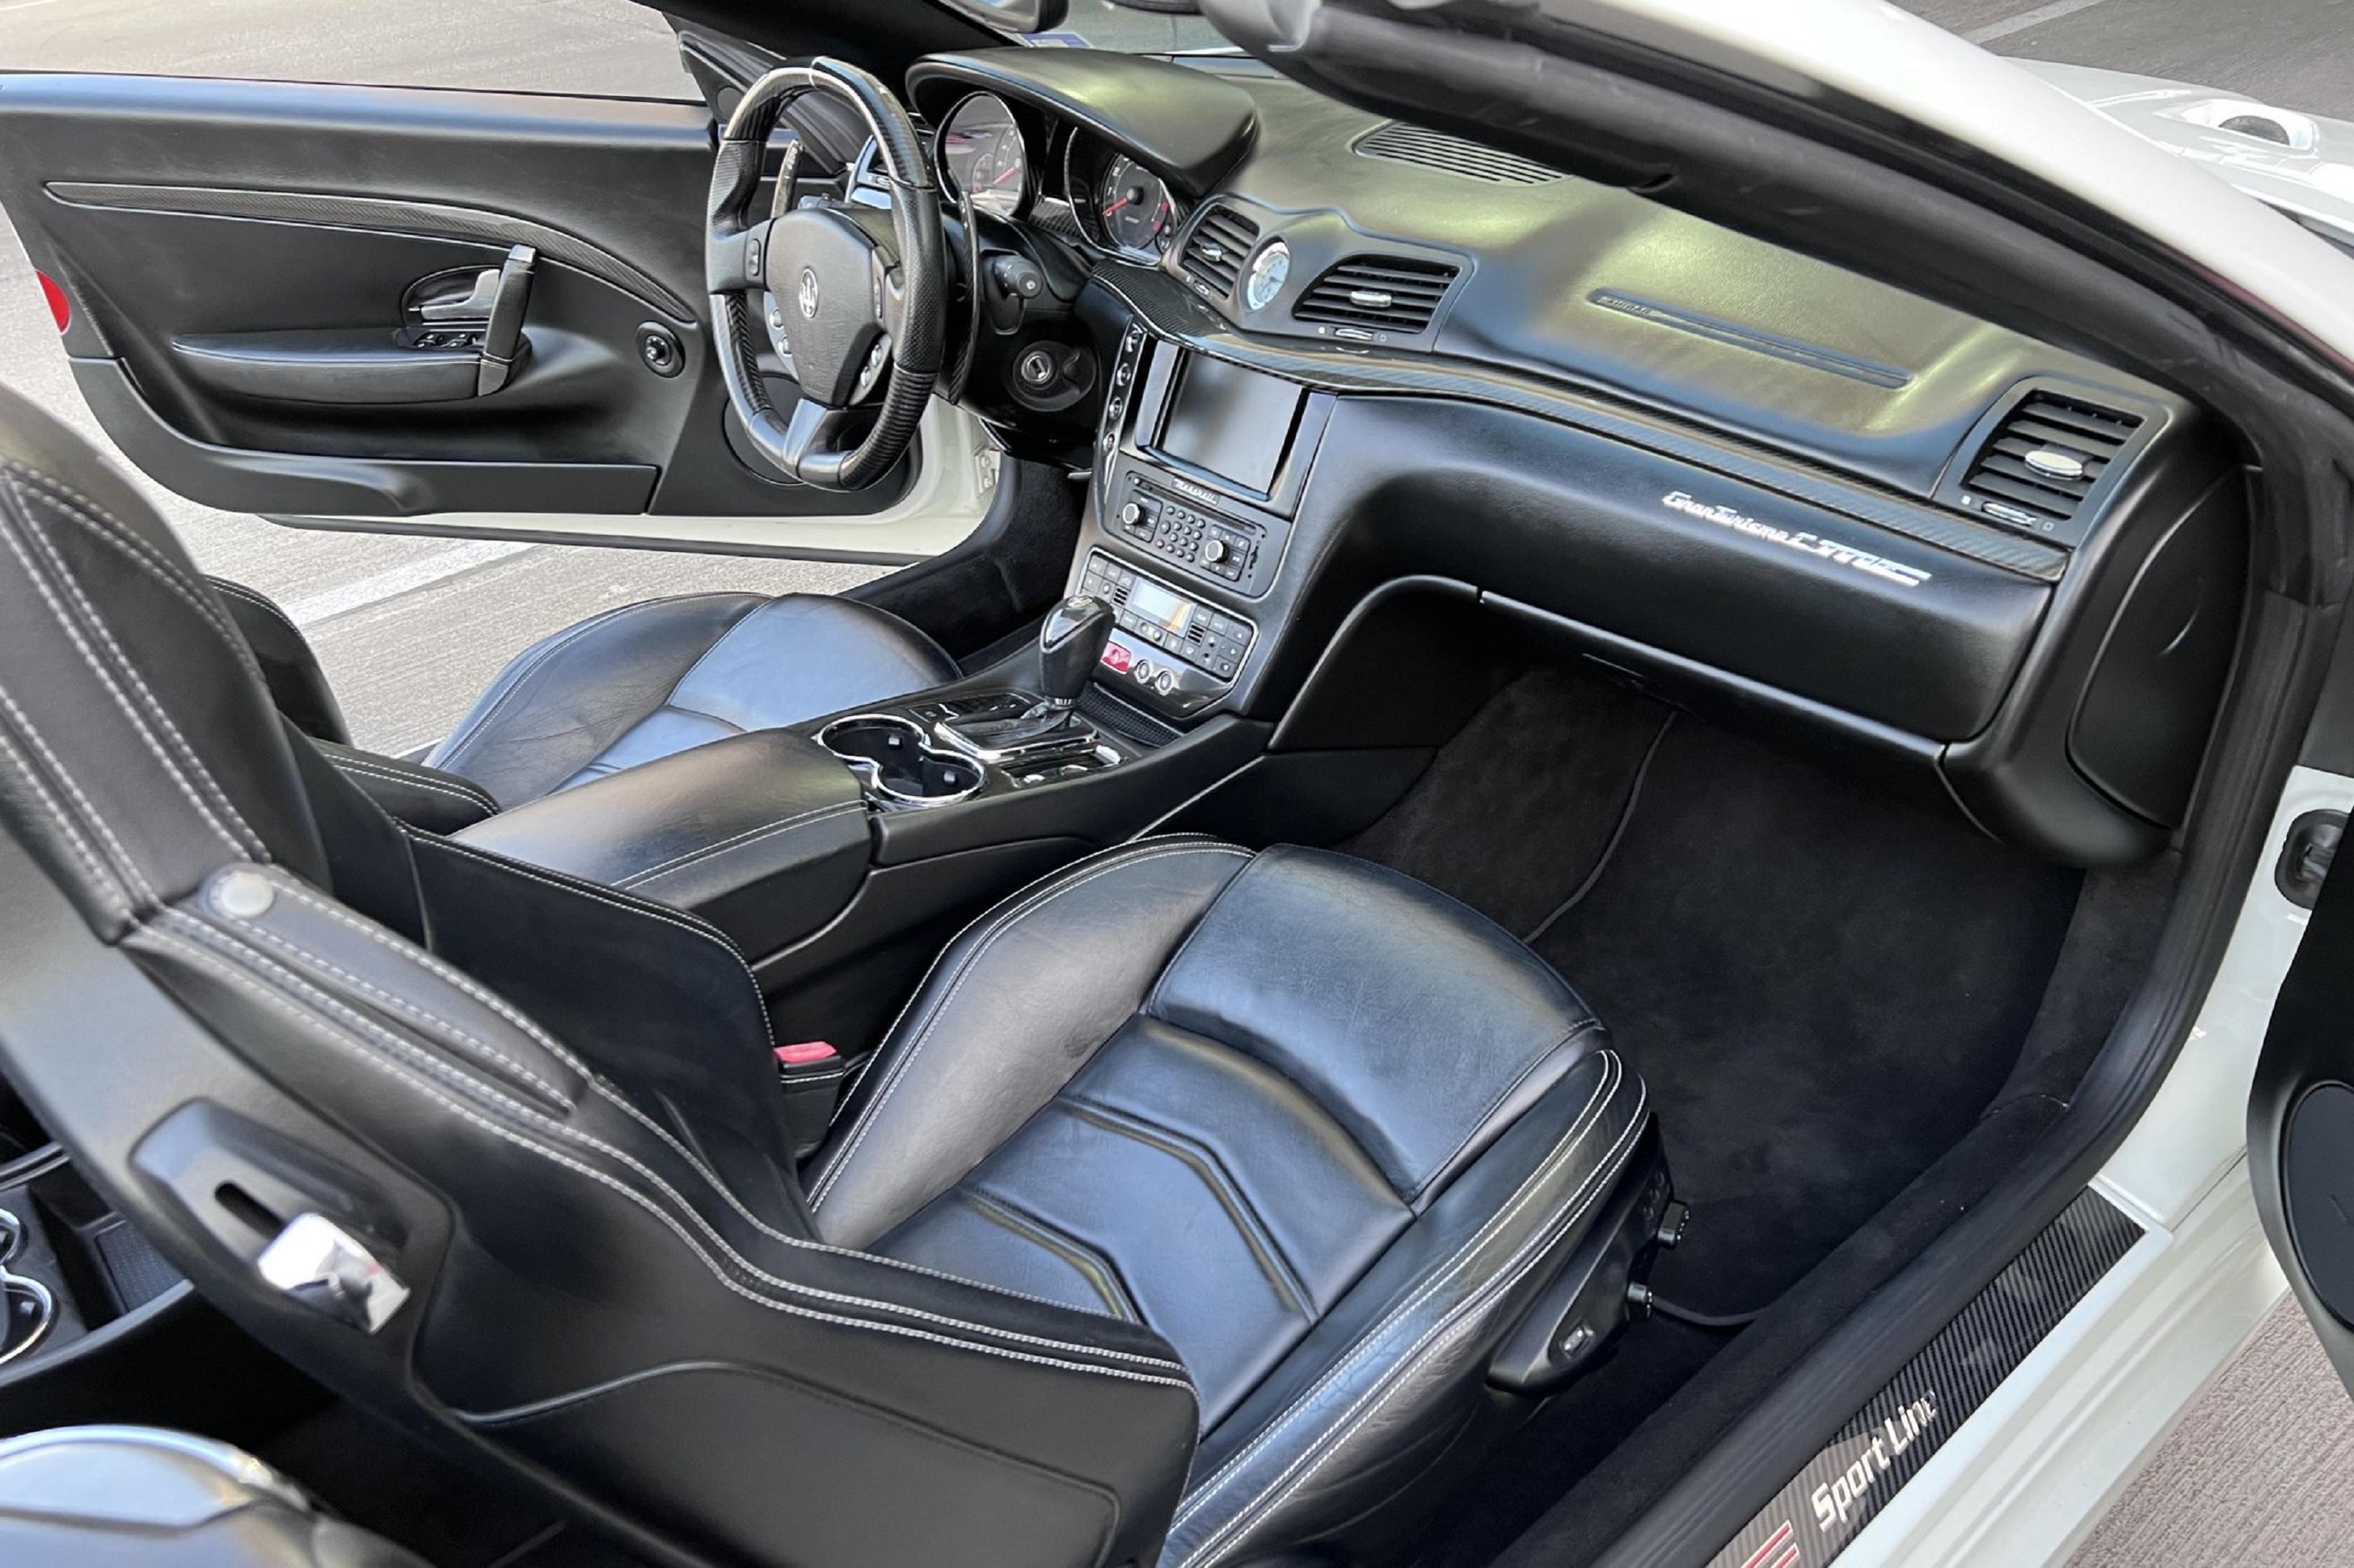 The black leather seats and carbon fiber clad black dashboard of a white 2013 Maserati GranTurismo MC Convertible